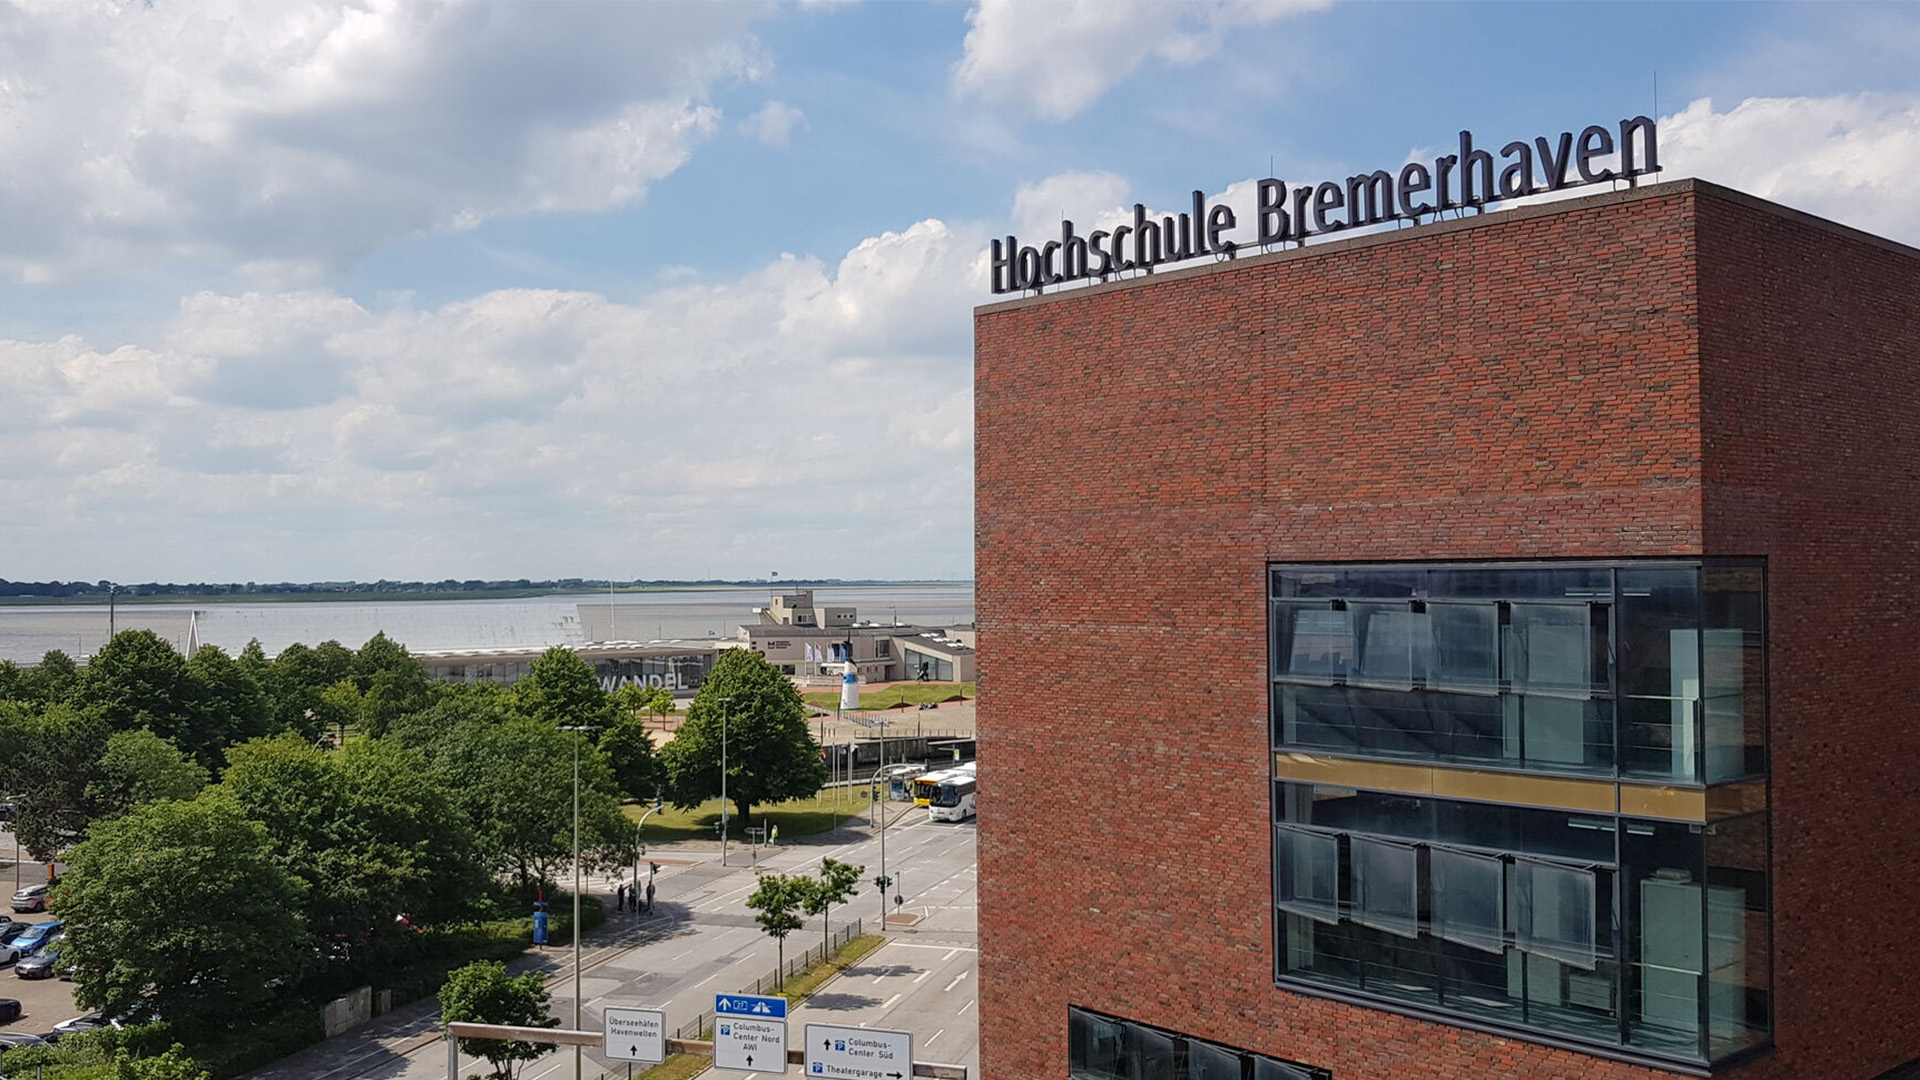 Hochschule Bremerhaven von außen